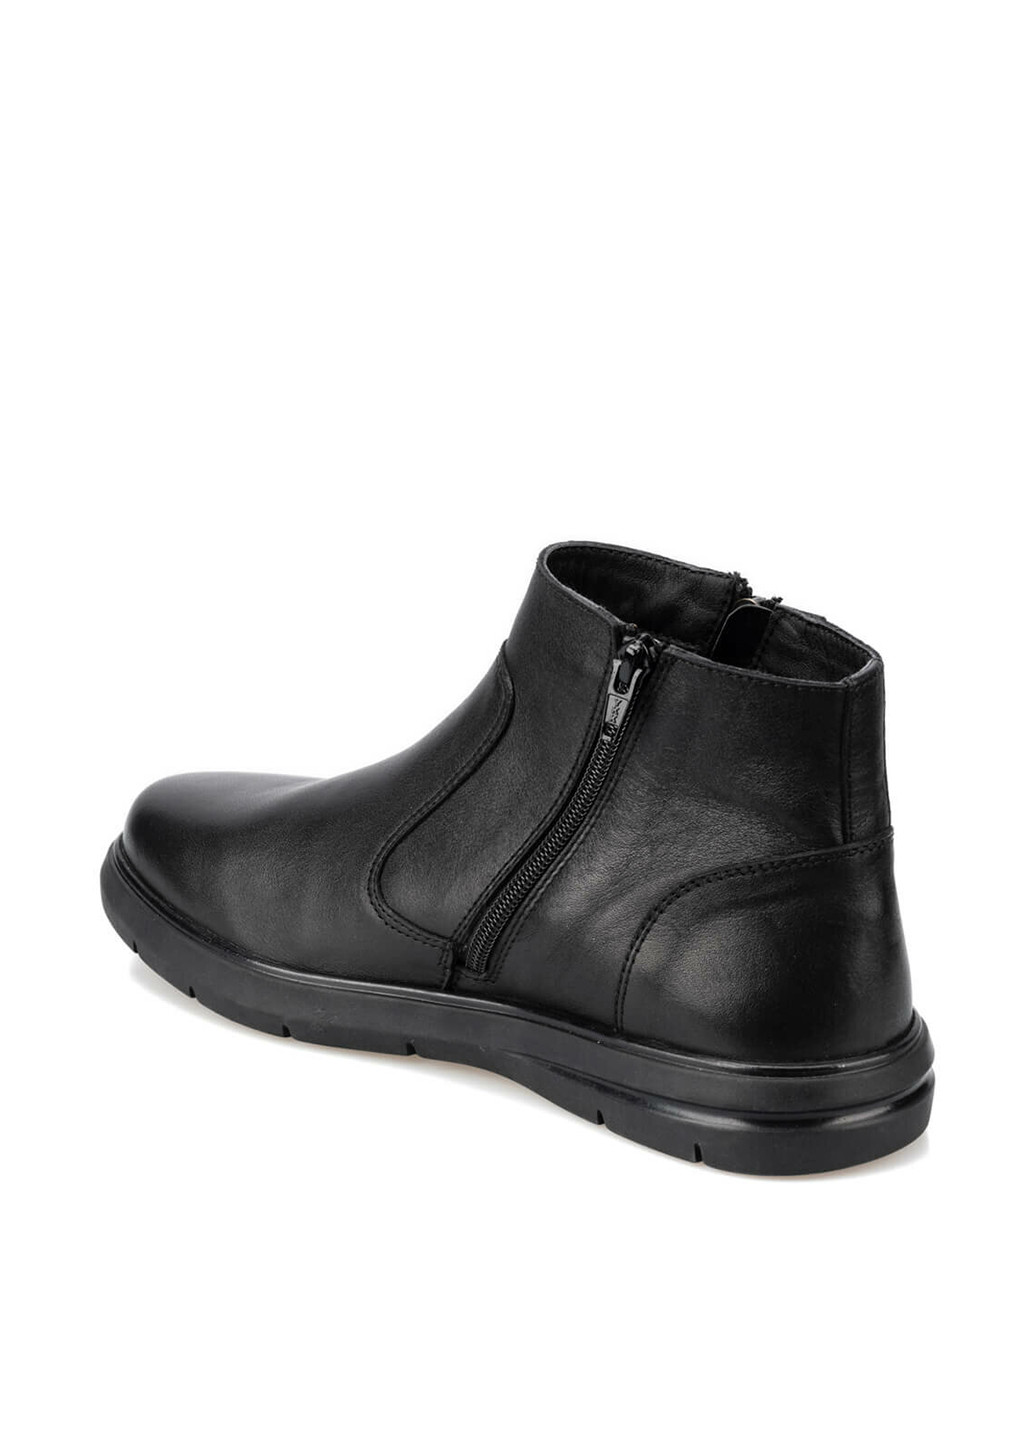 Черные осенние ботинки Polaris 5 Nokta